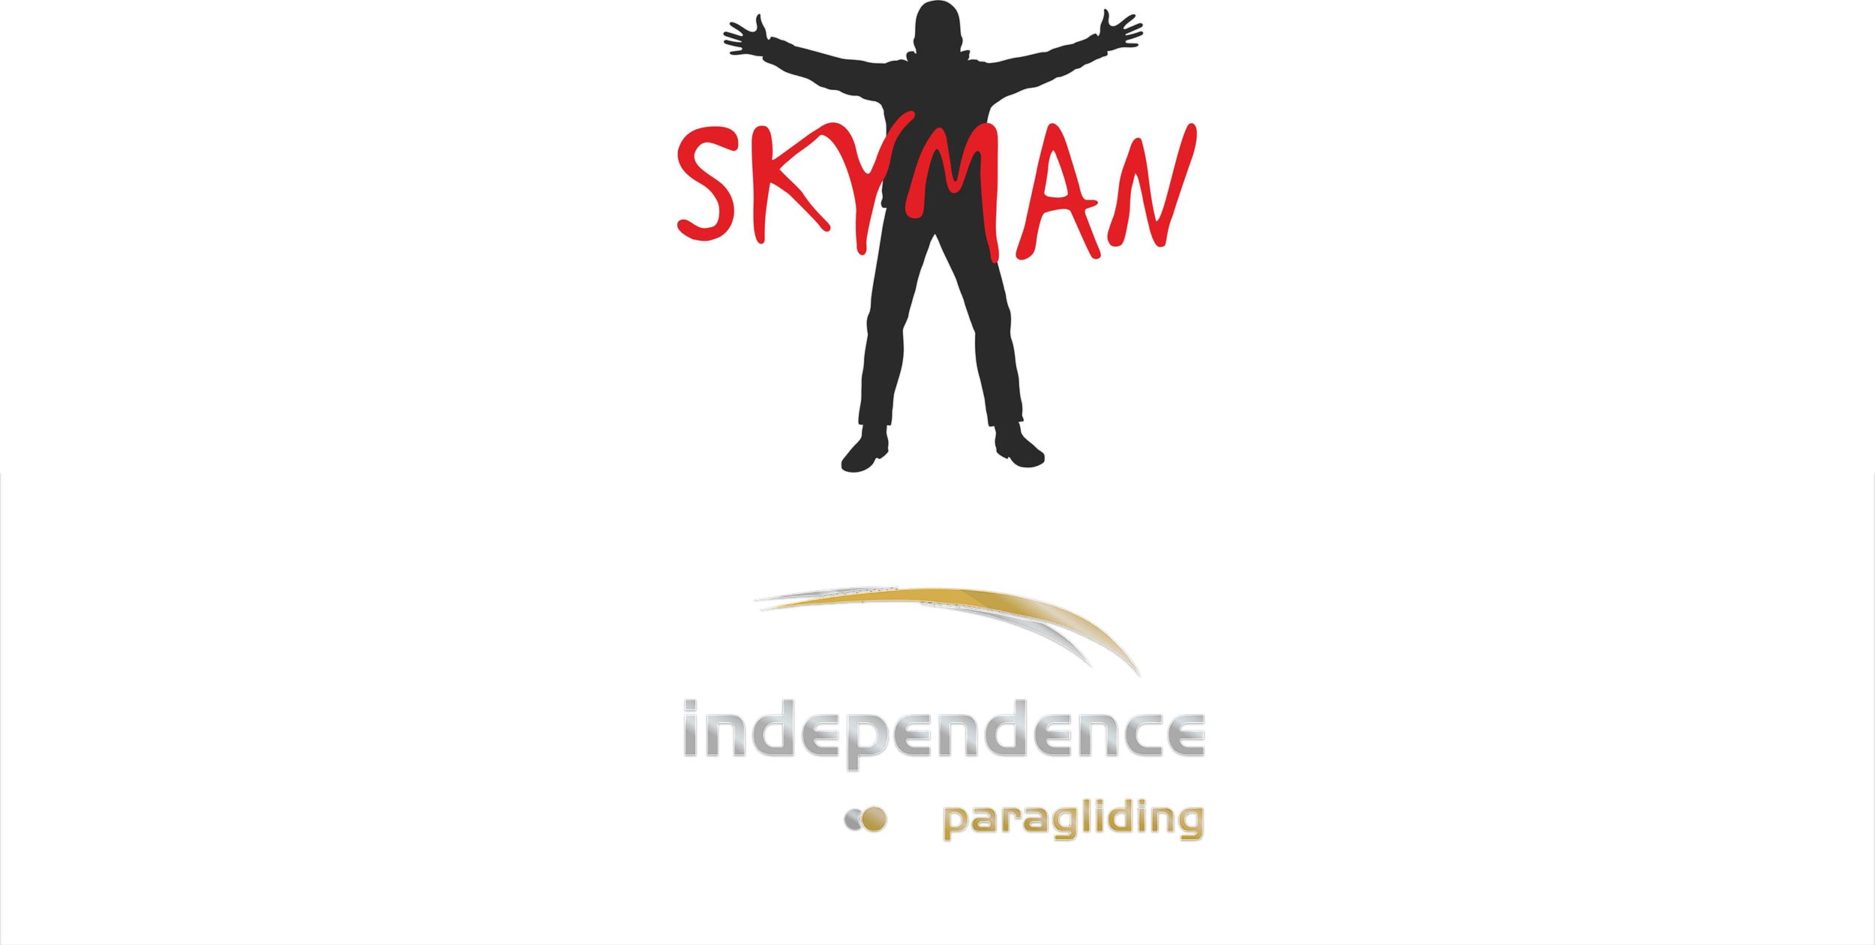 Independence Skyman logos